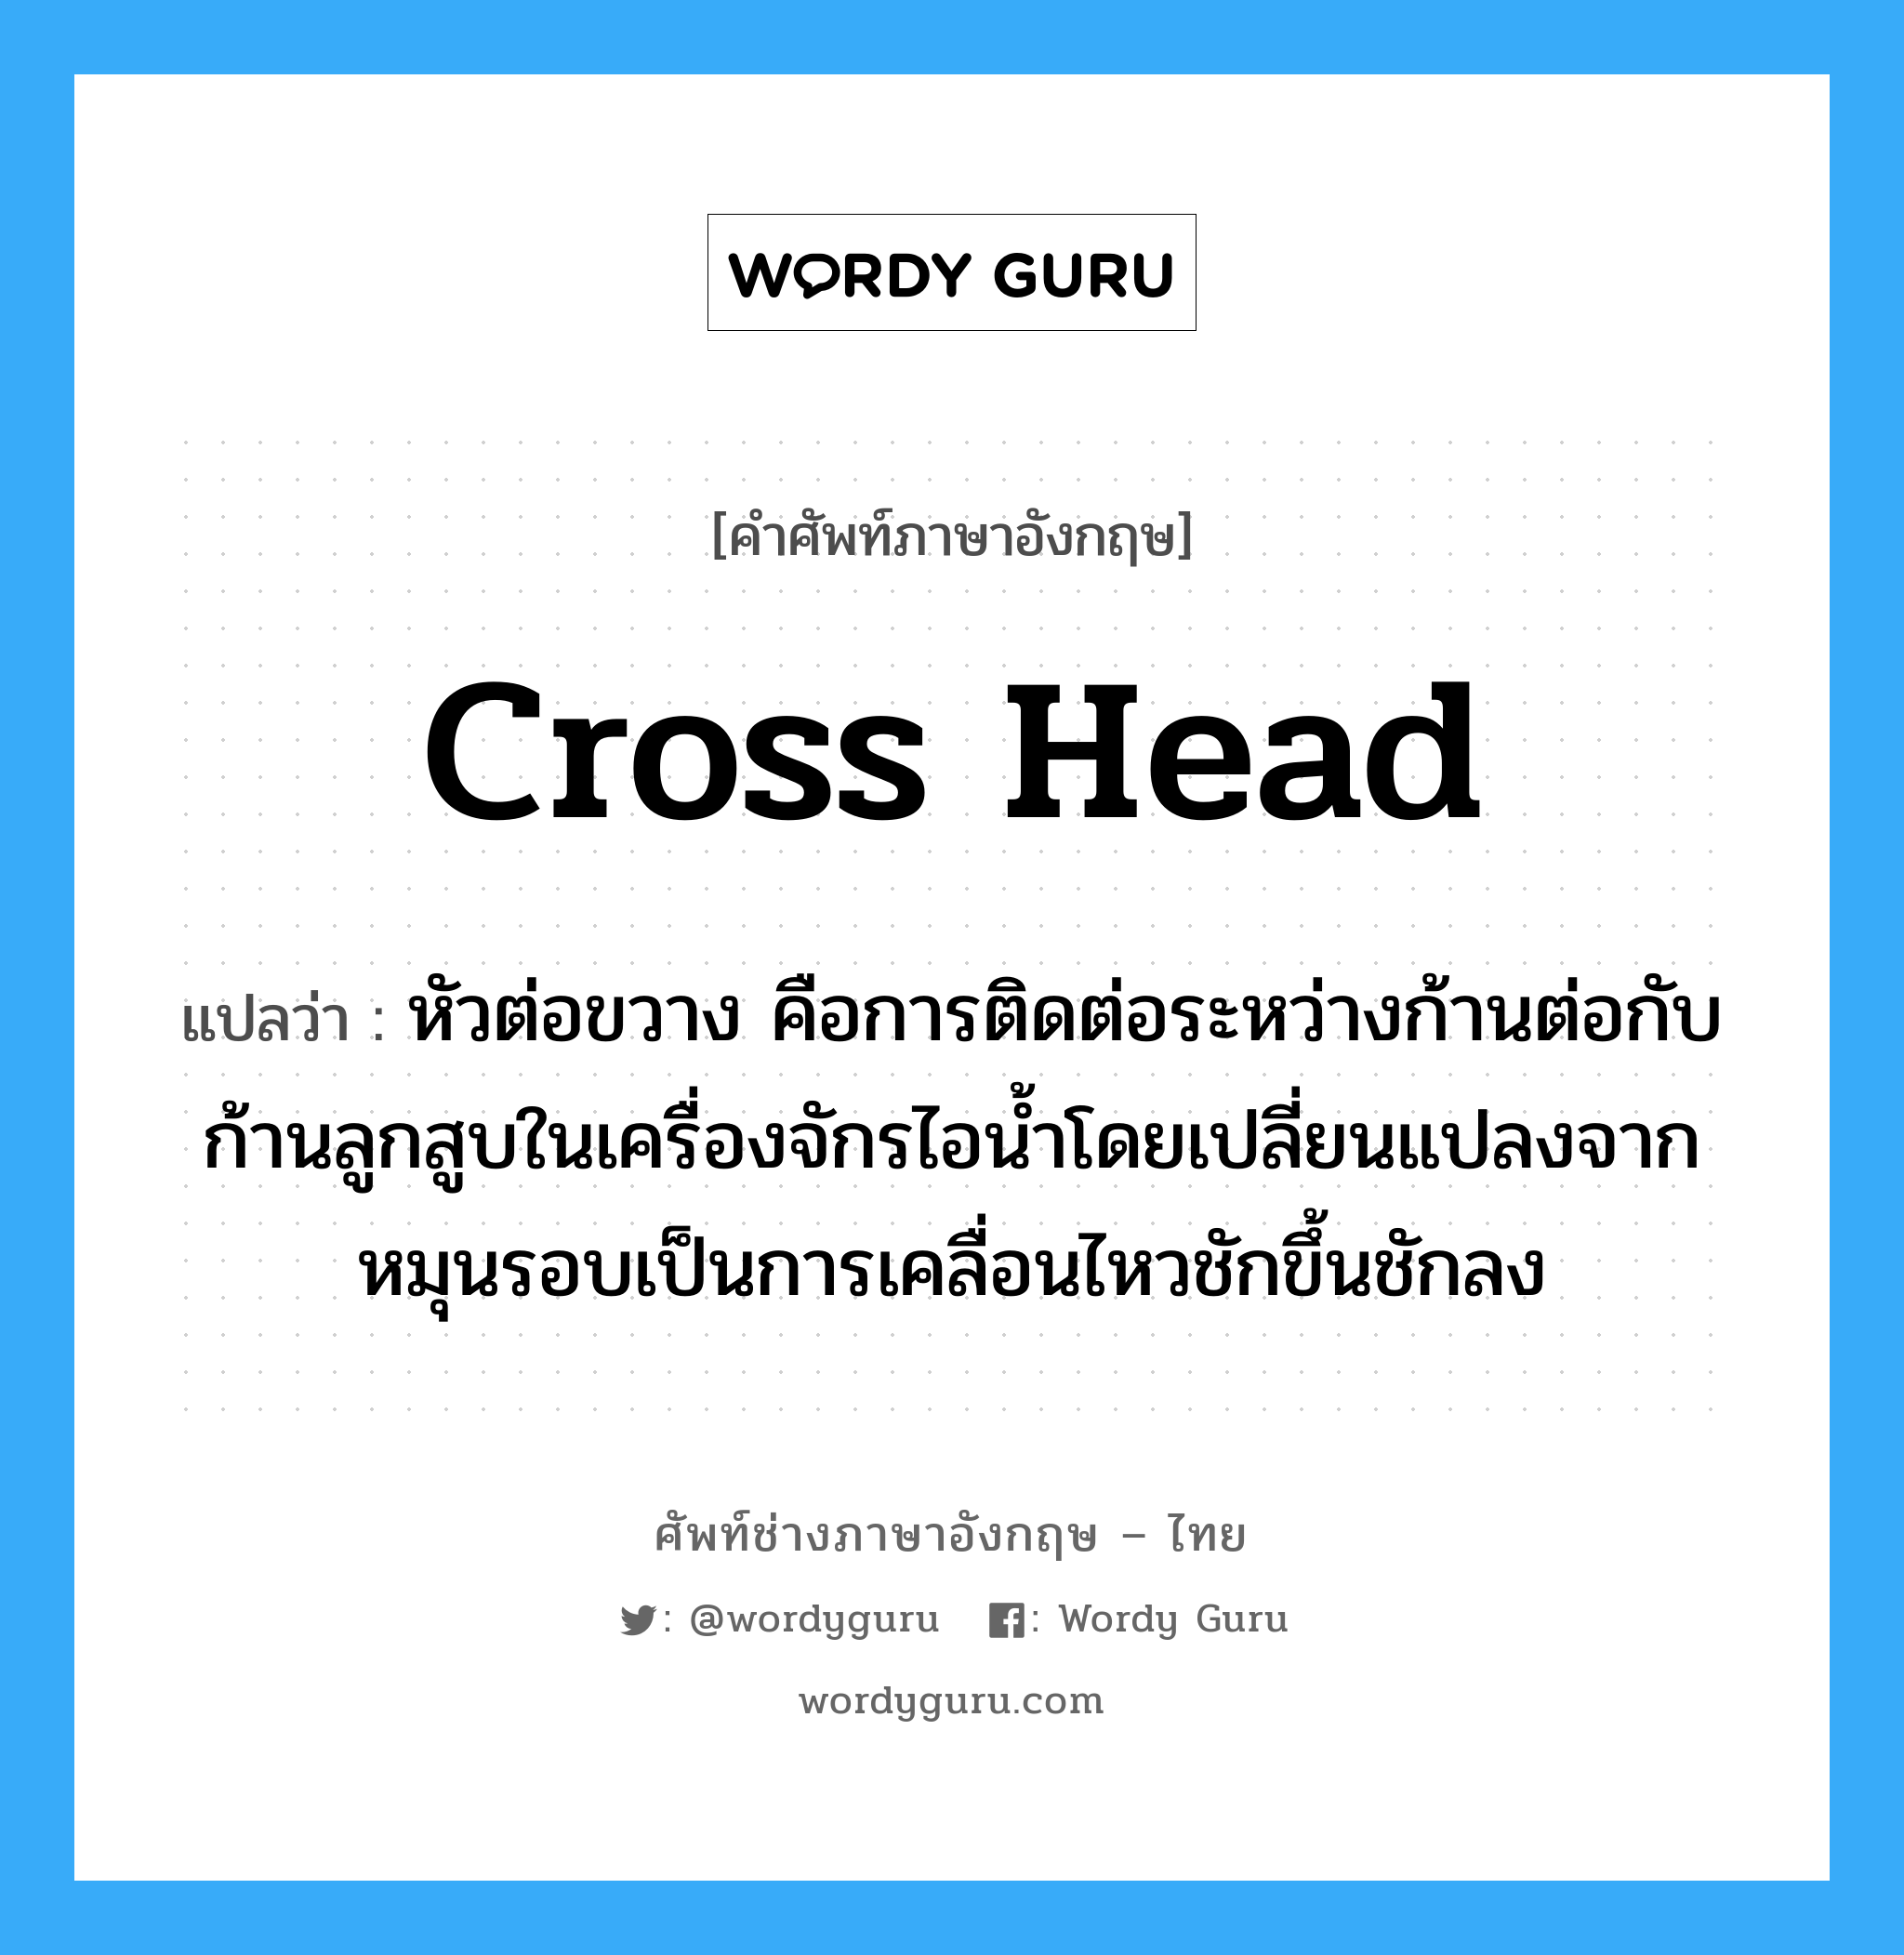 cross head แปลว่า?, คำศัพท์ช่างภาษาอังกฤษ - ไทย cross head คำศัพท์ภาษาอังกฤษ cross head แปลว่า หัวต่อขวาง คือการติดต่อระหว่างก้านต่อกับก้านลูกสูบในเครื่องจักรไอน้ำโดยเปลี่ยนแปลงจากหมุนรอบเป็นการเคลื่อนไหวชักขึ้นชักลง